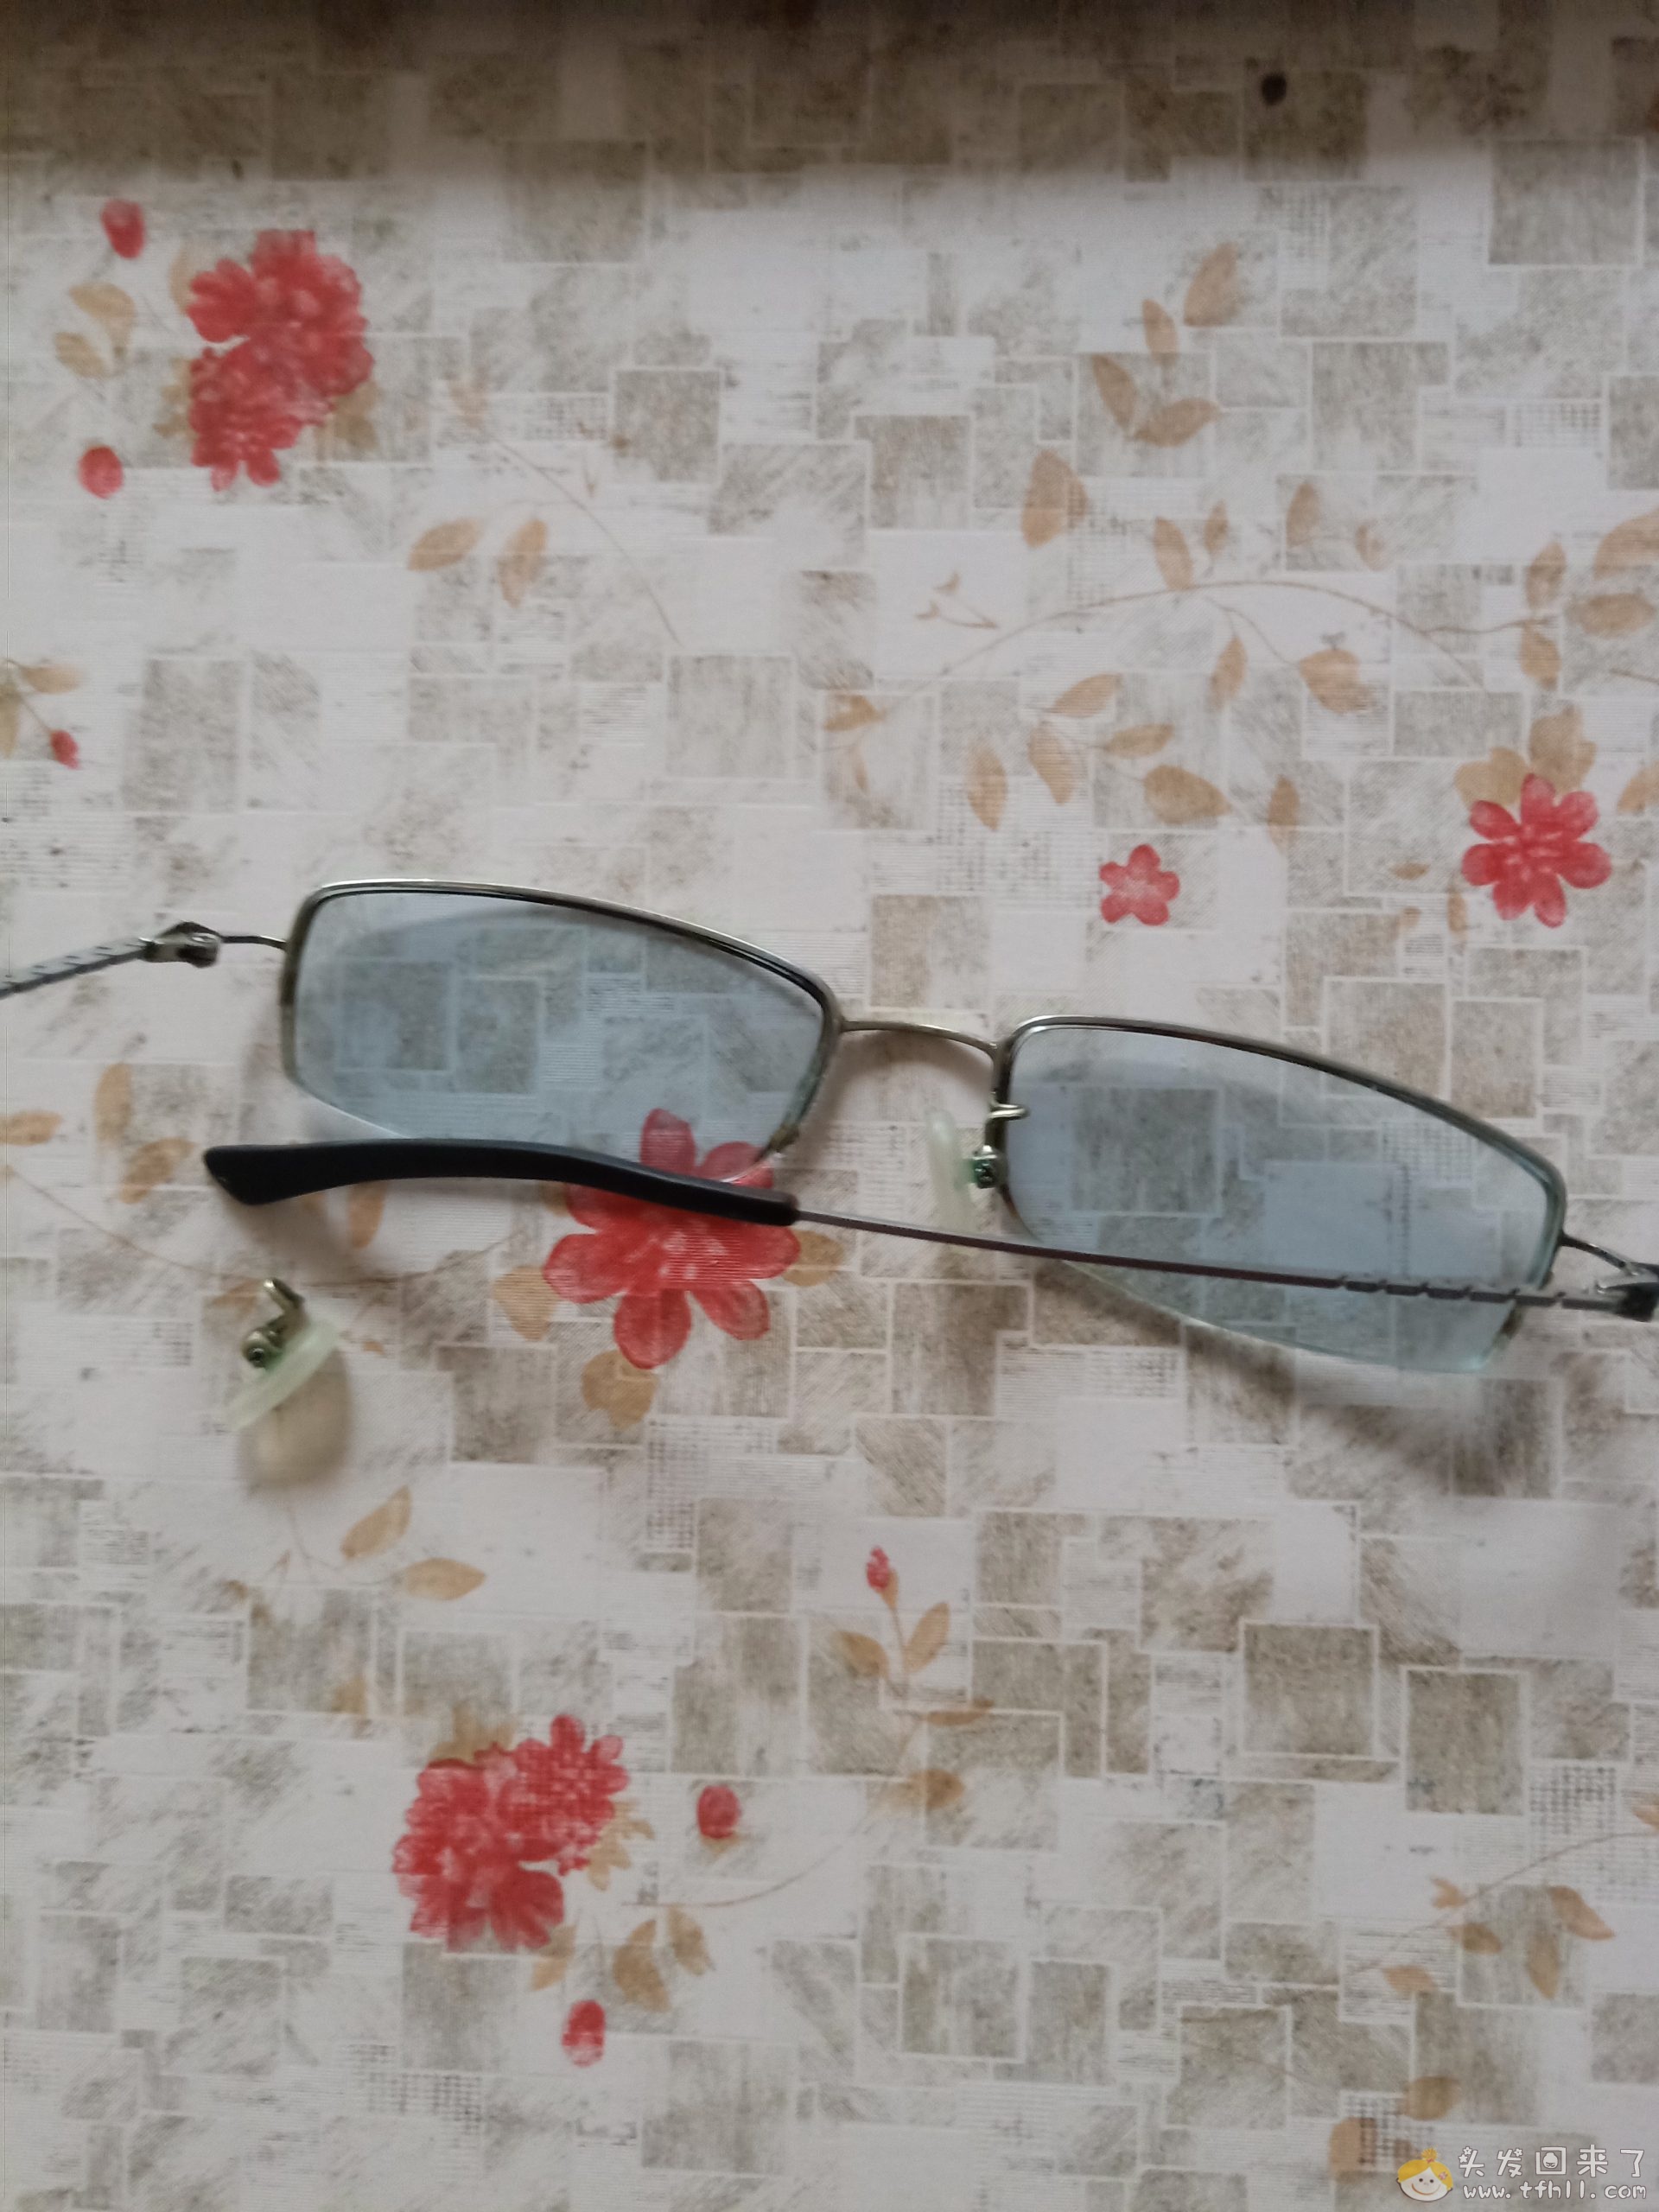 一款近视眼镜使用了12年，我该还它自由了图片 No.2